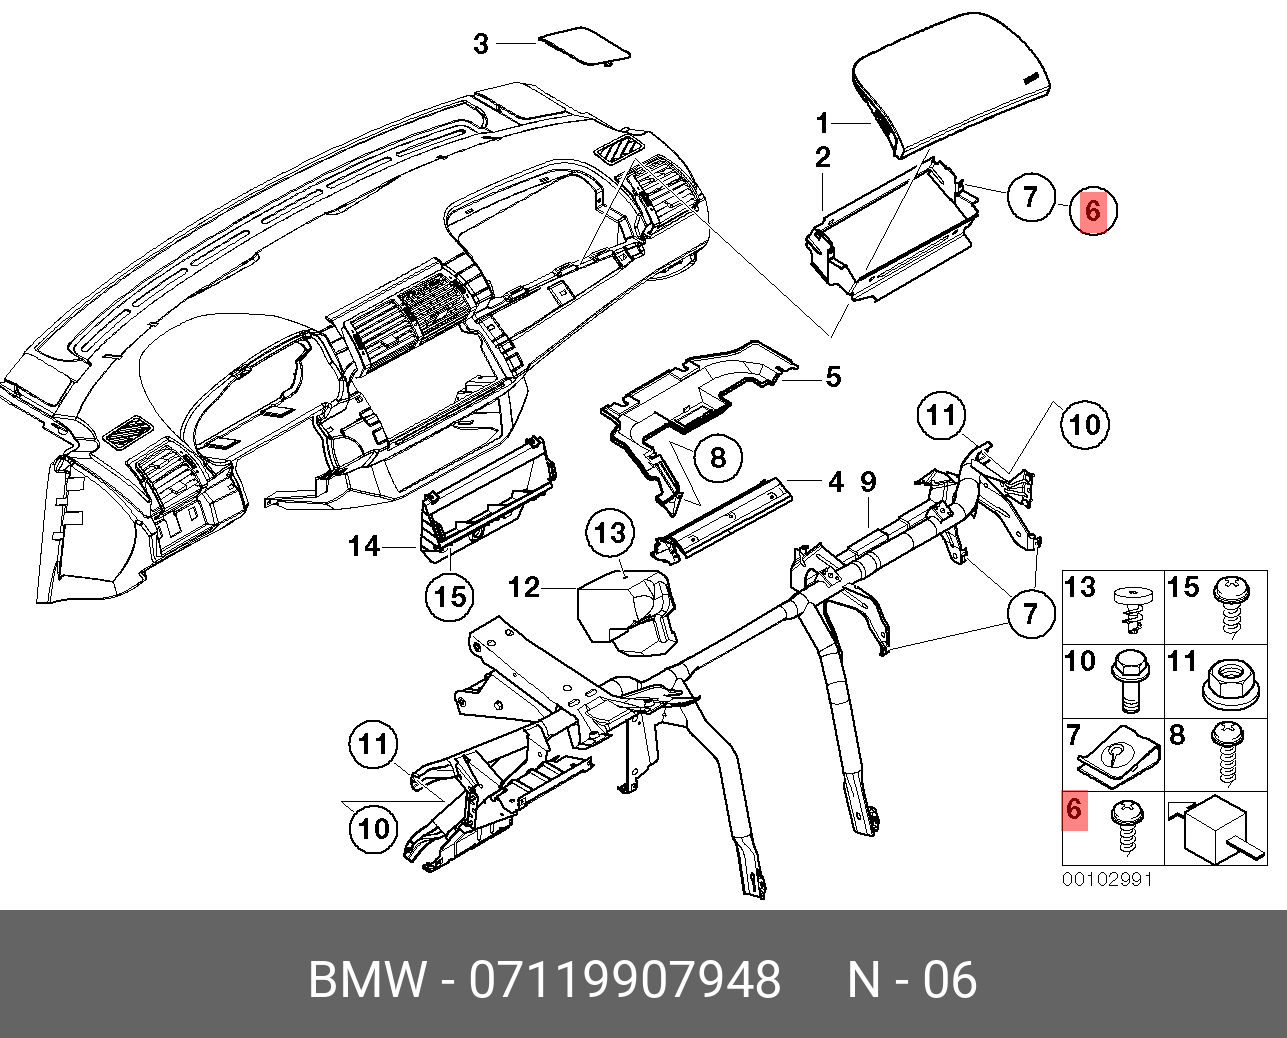 Запчасти бмв х5 е53. Воздуховоды печки BMW x5 e53. Щиток БМВ е53. Усилитель панели BMW e53. БМВ х5 е53 монтажная панель радиатор схема.